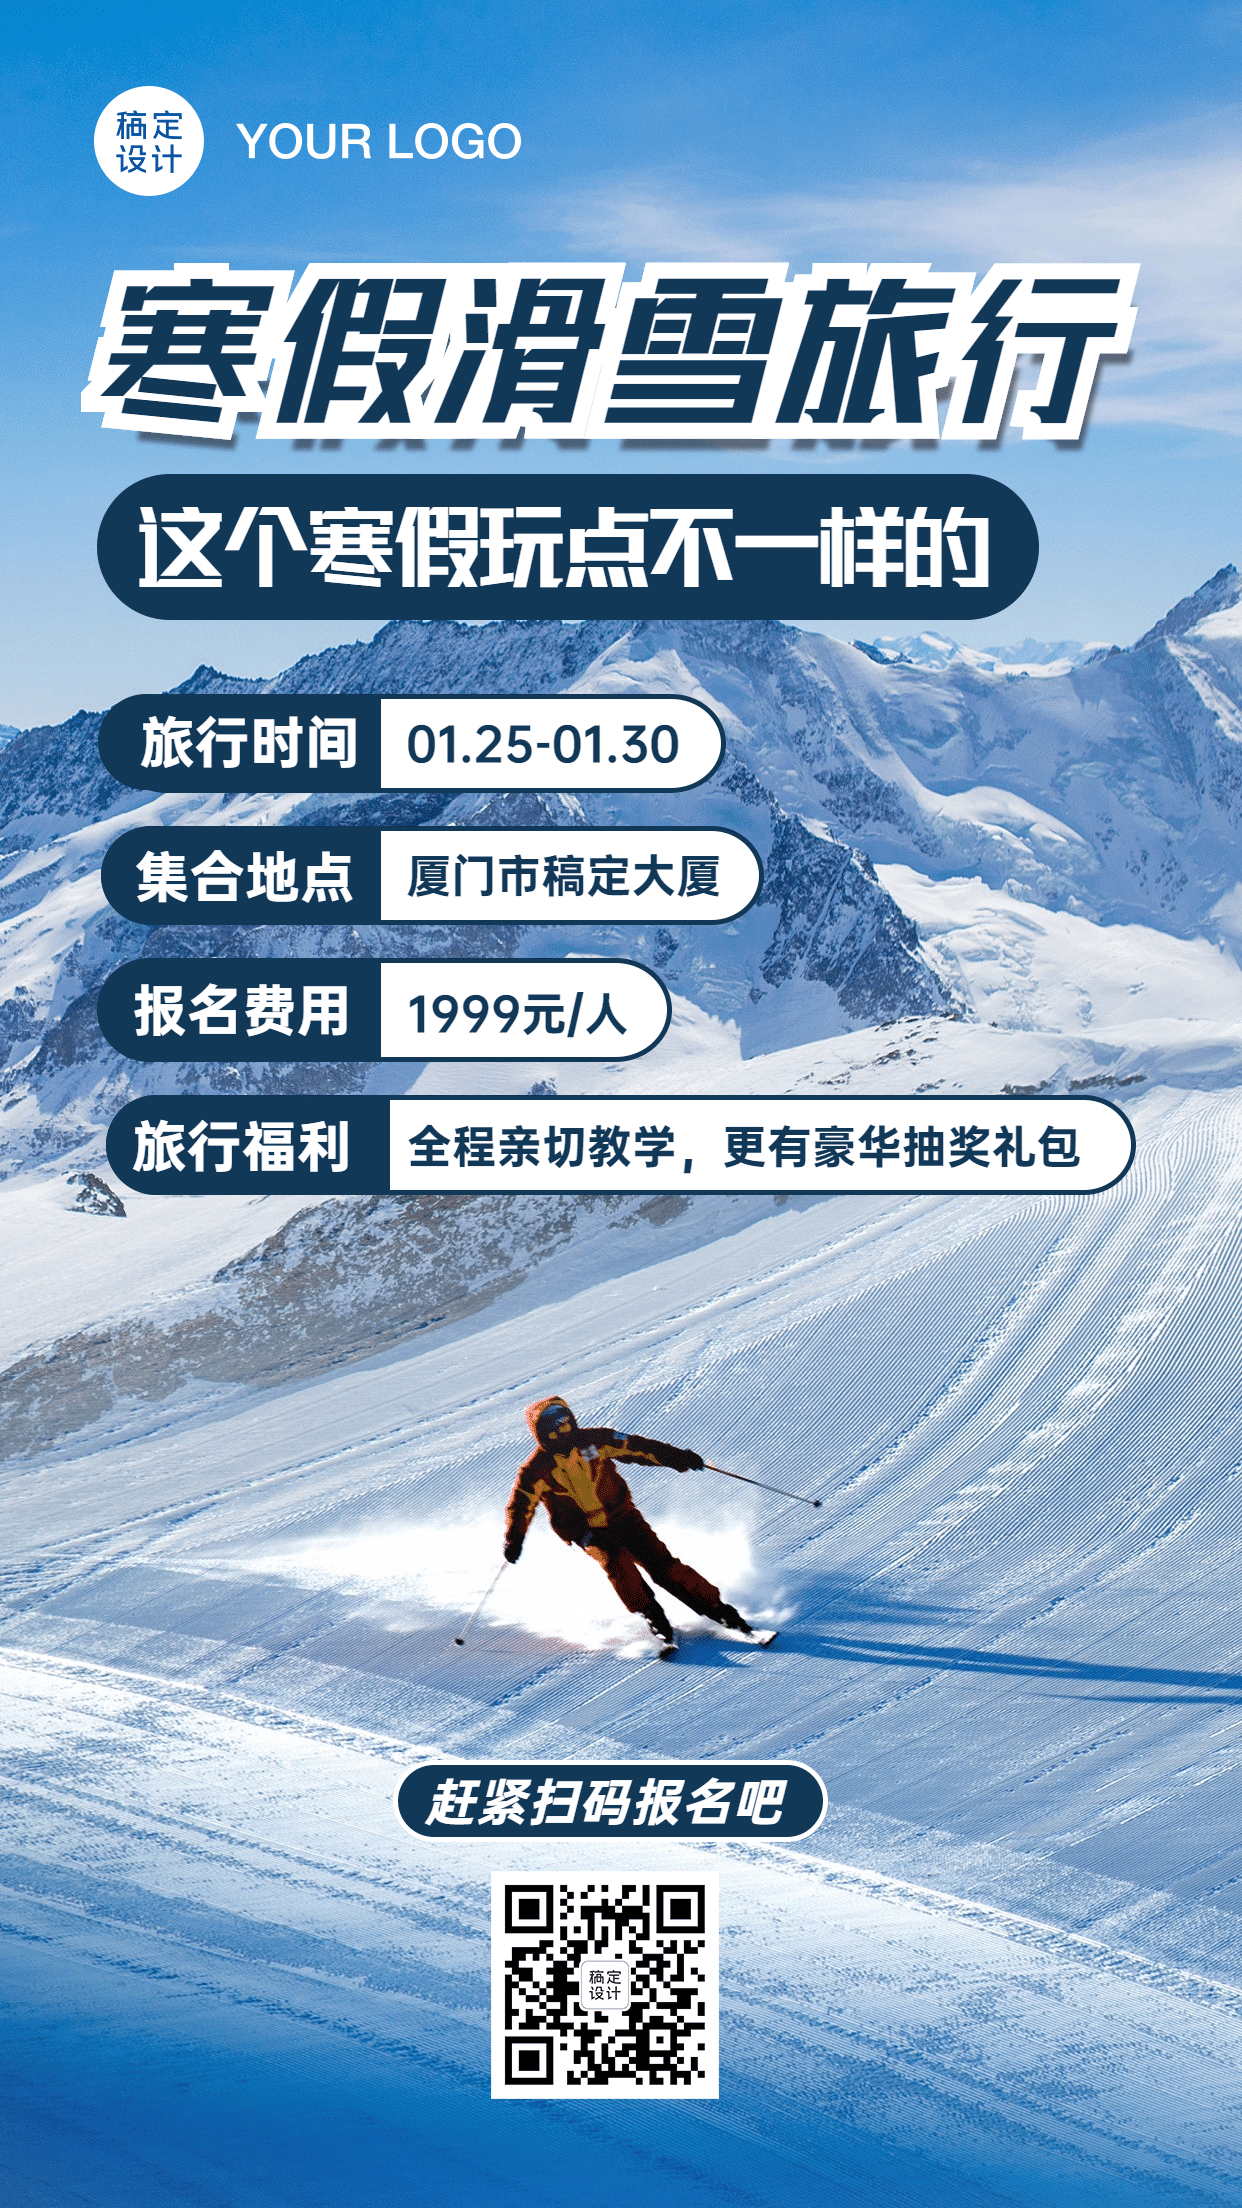 寒假假期冬季滑雪优惠活动手机海报